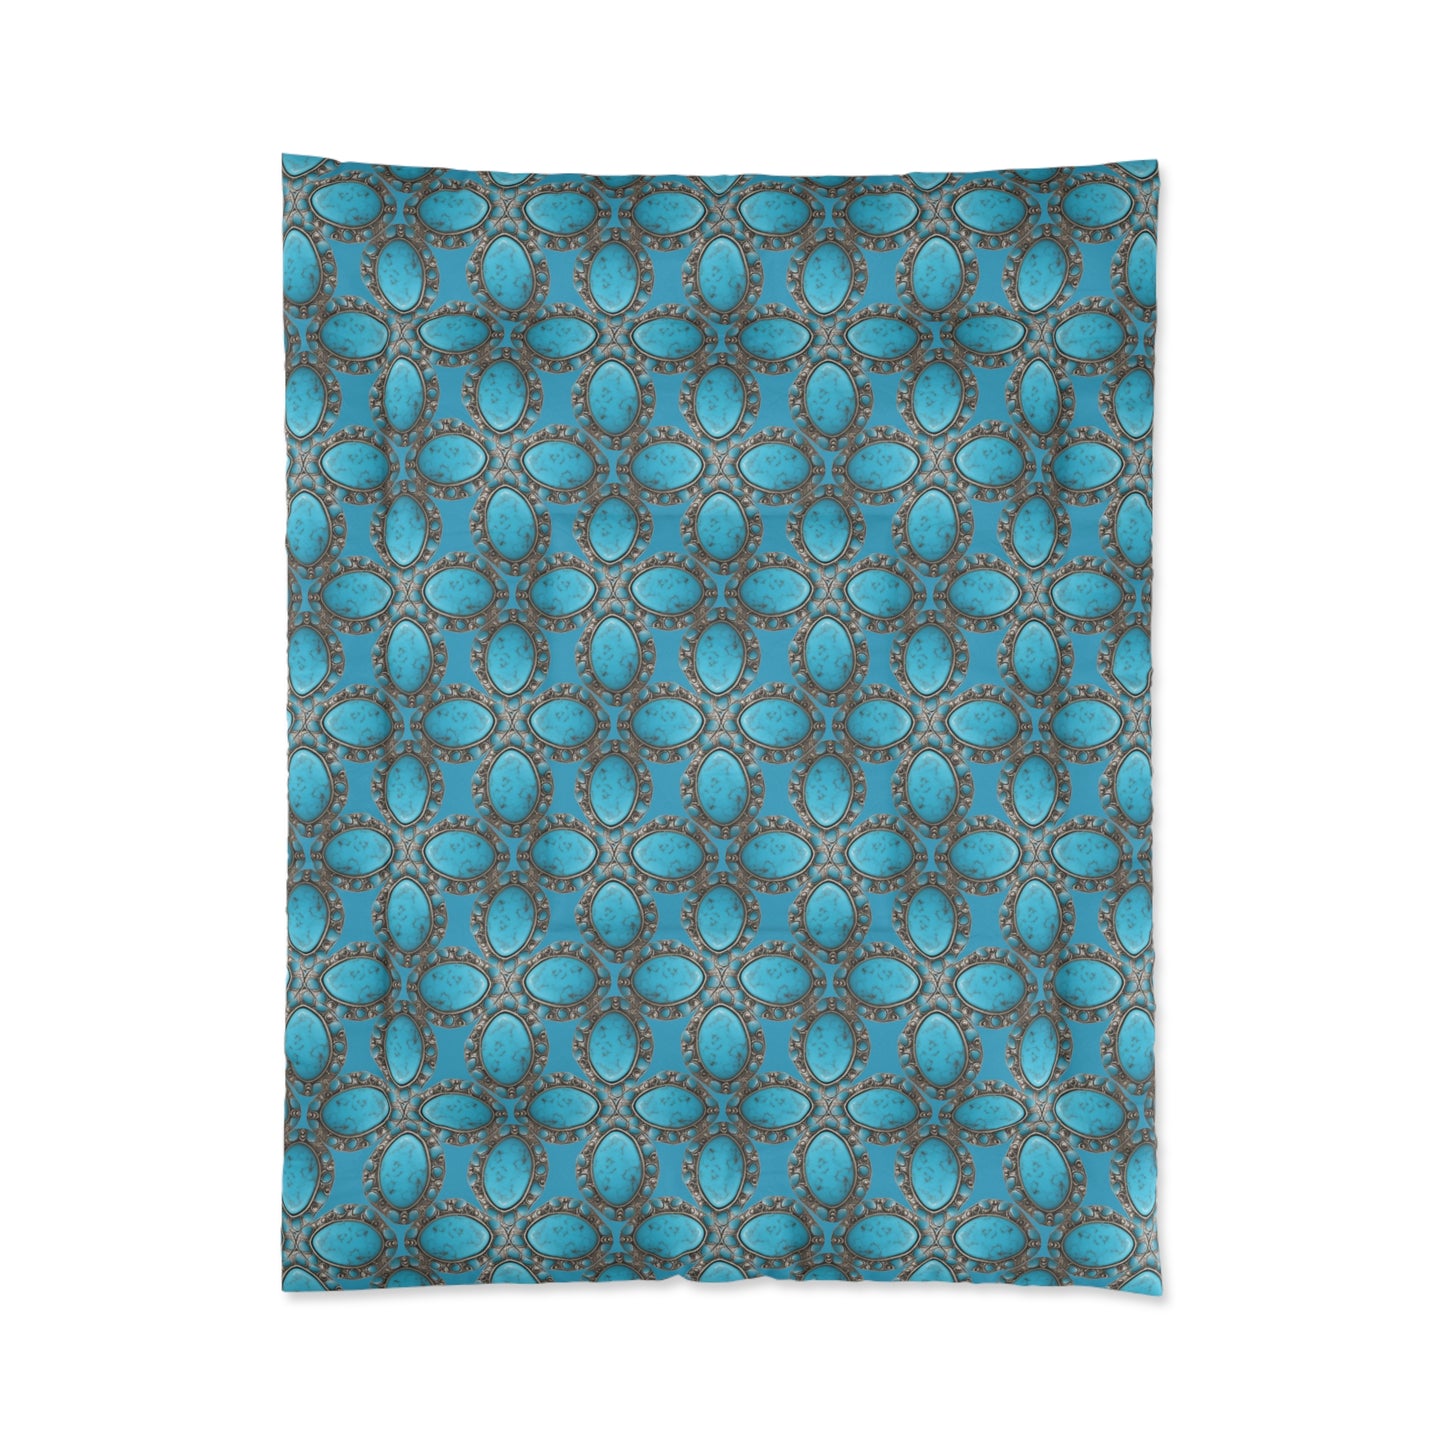 Turquoise Cross Comforter